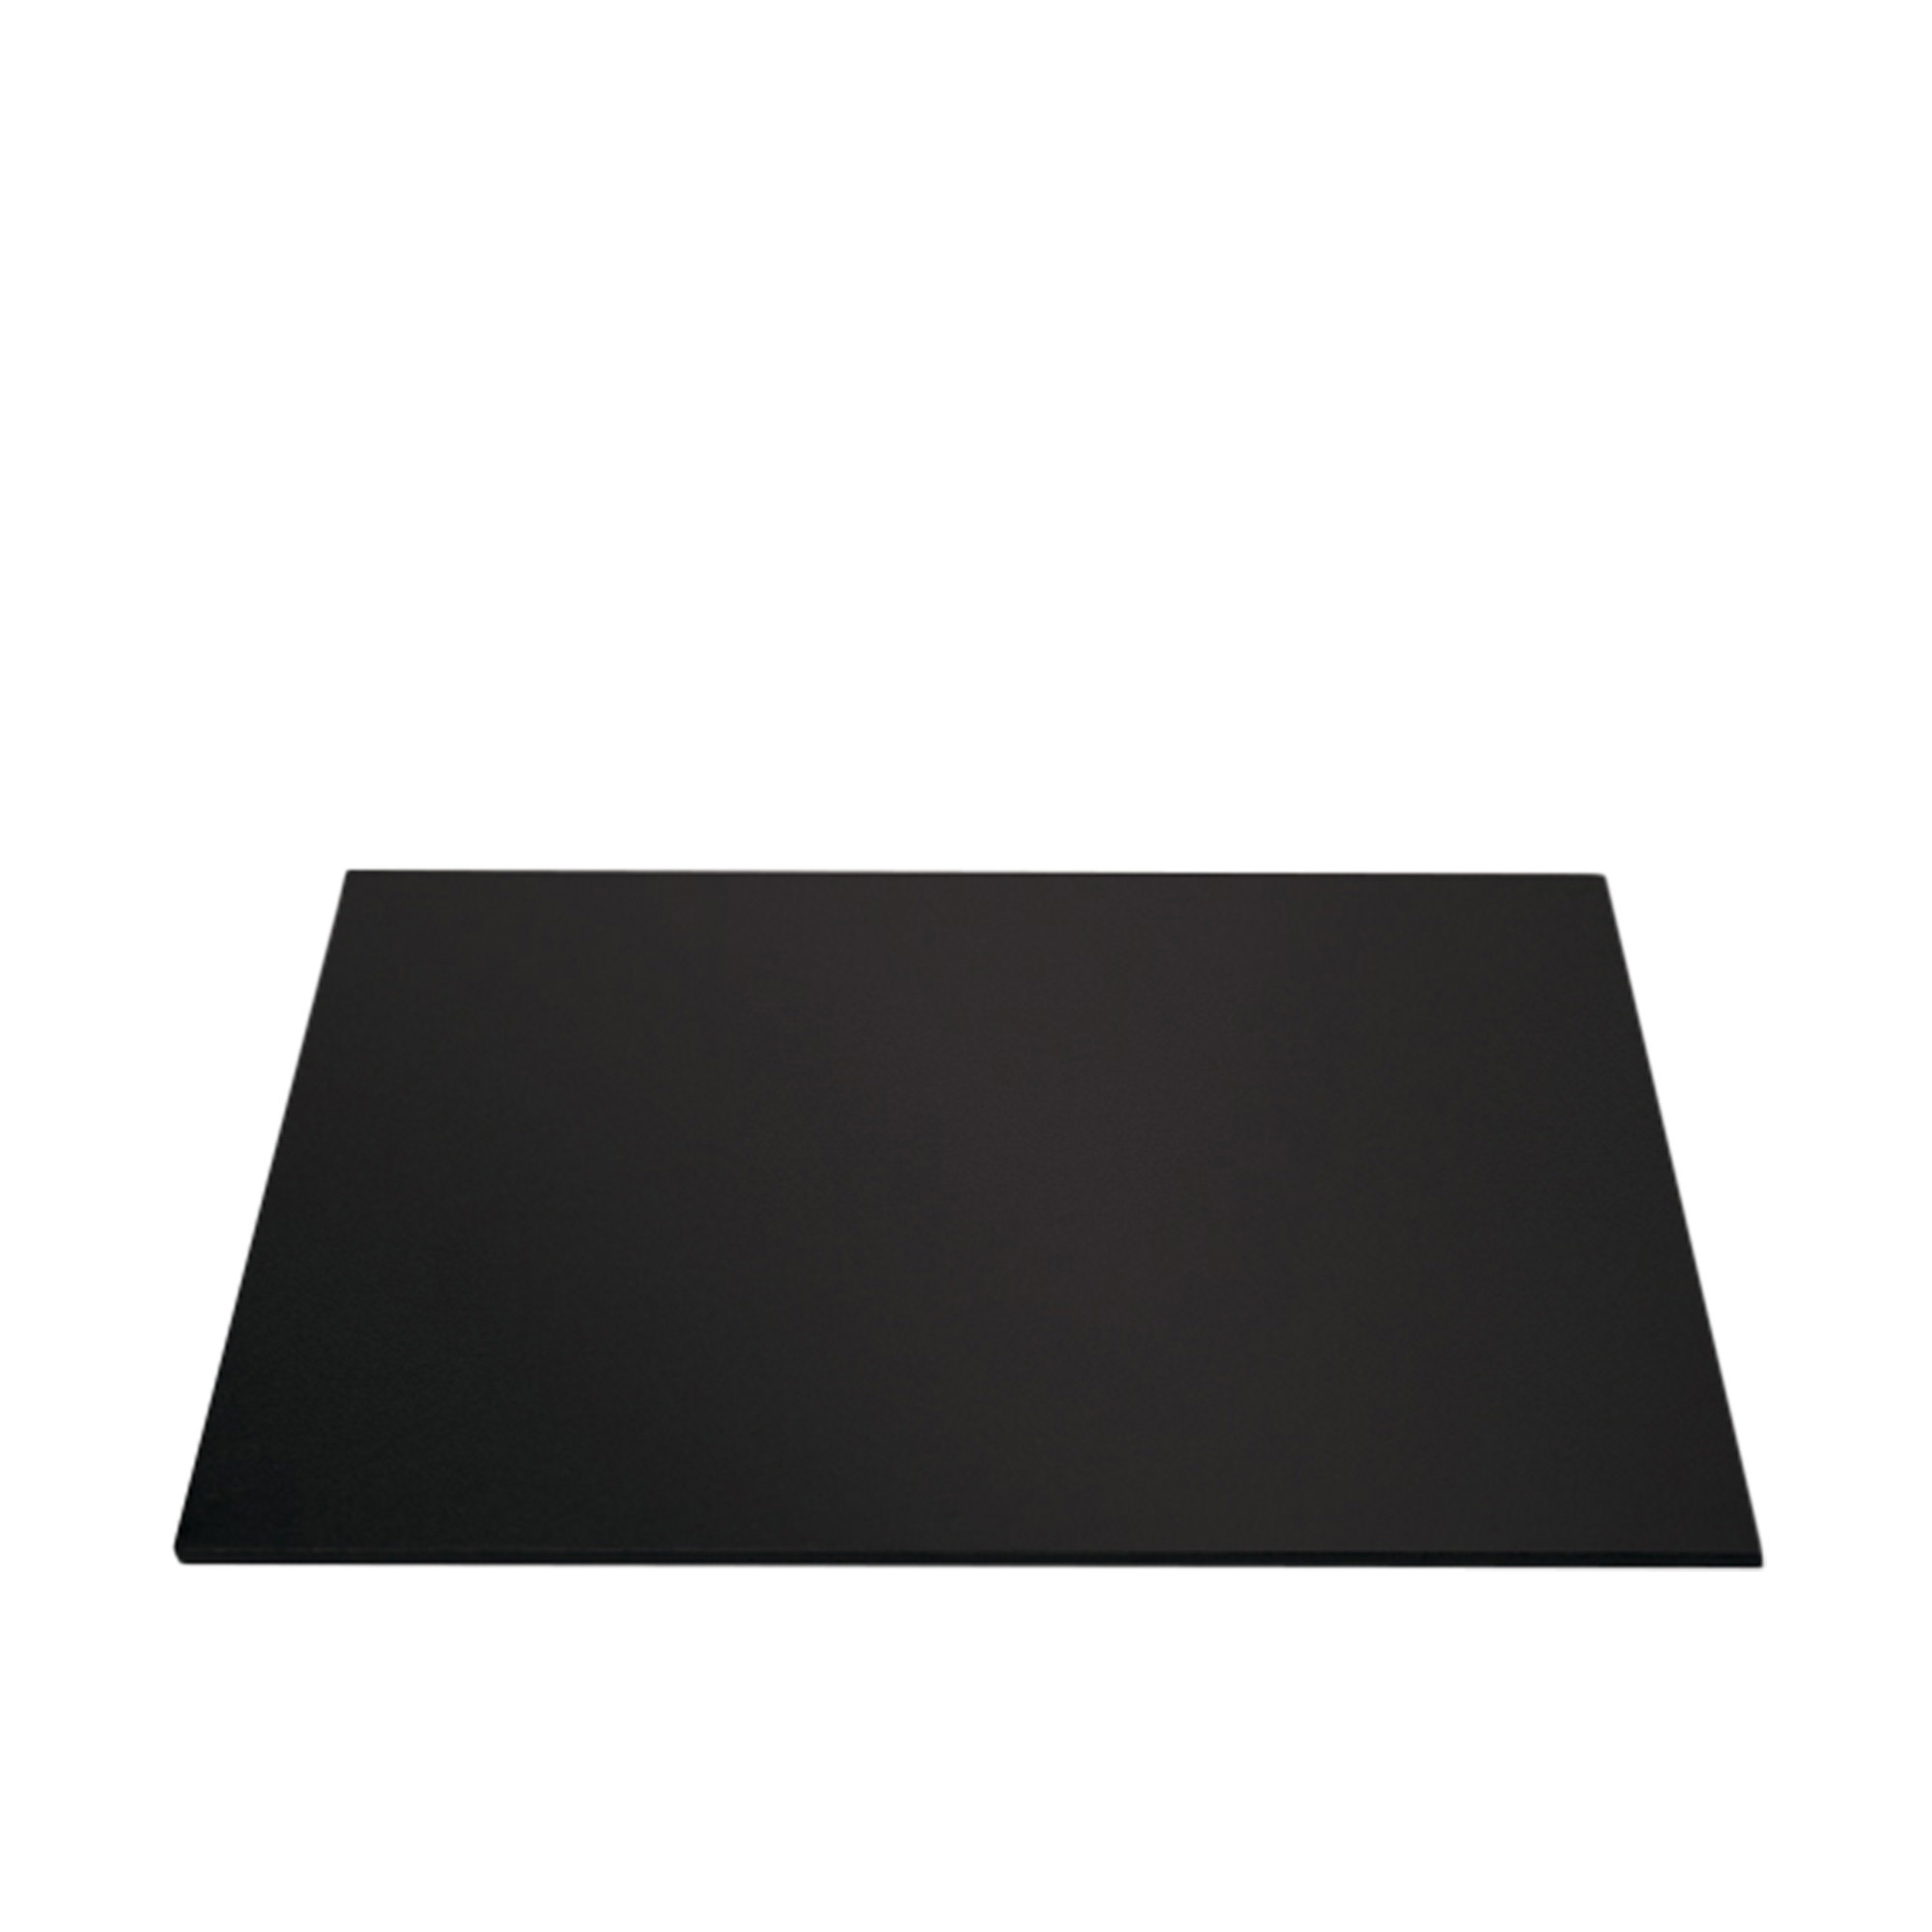 Mondo Square Cake Board 30cm Black Image 1